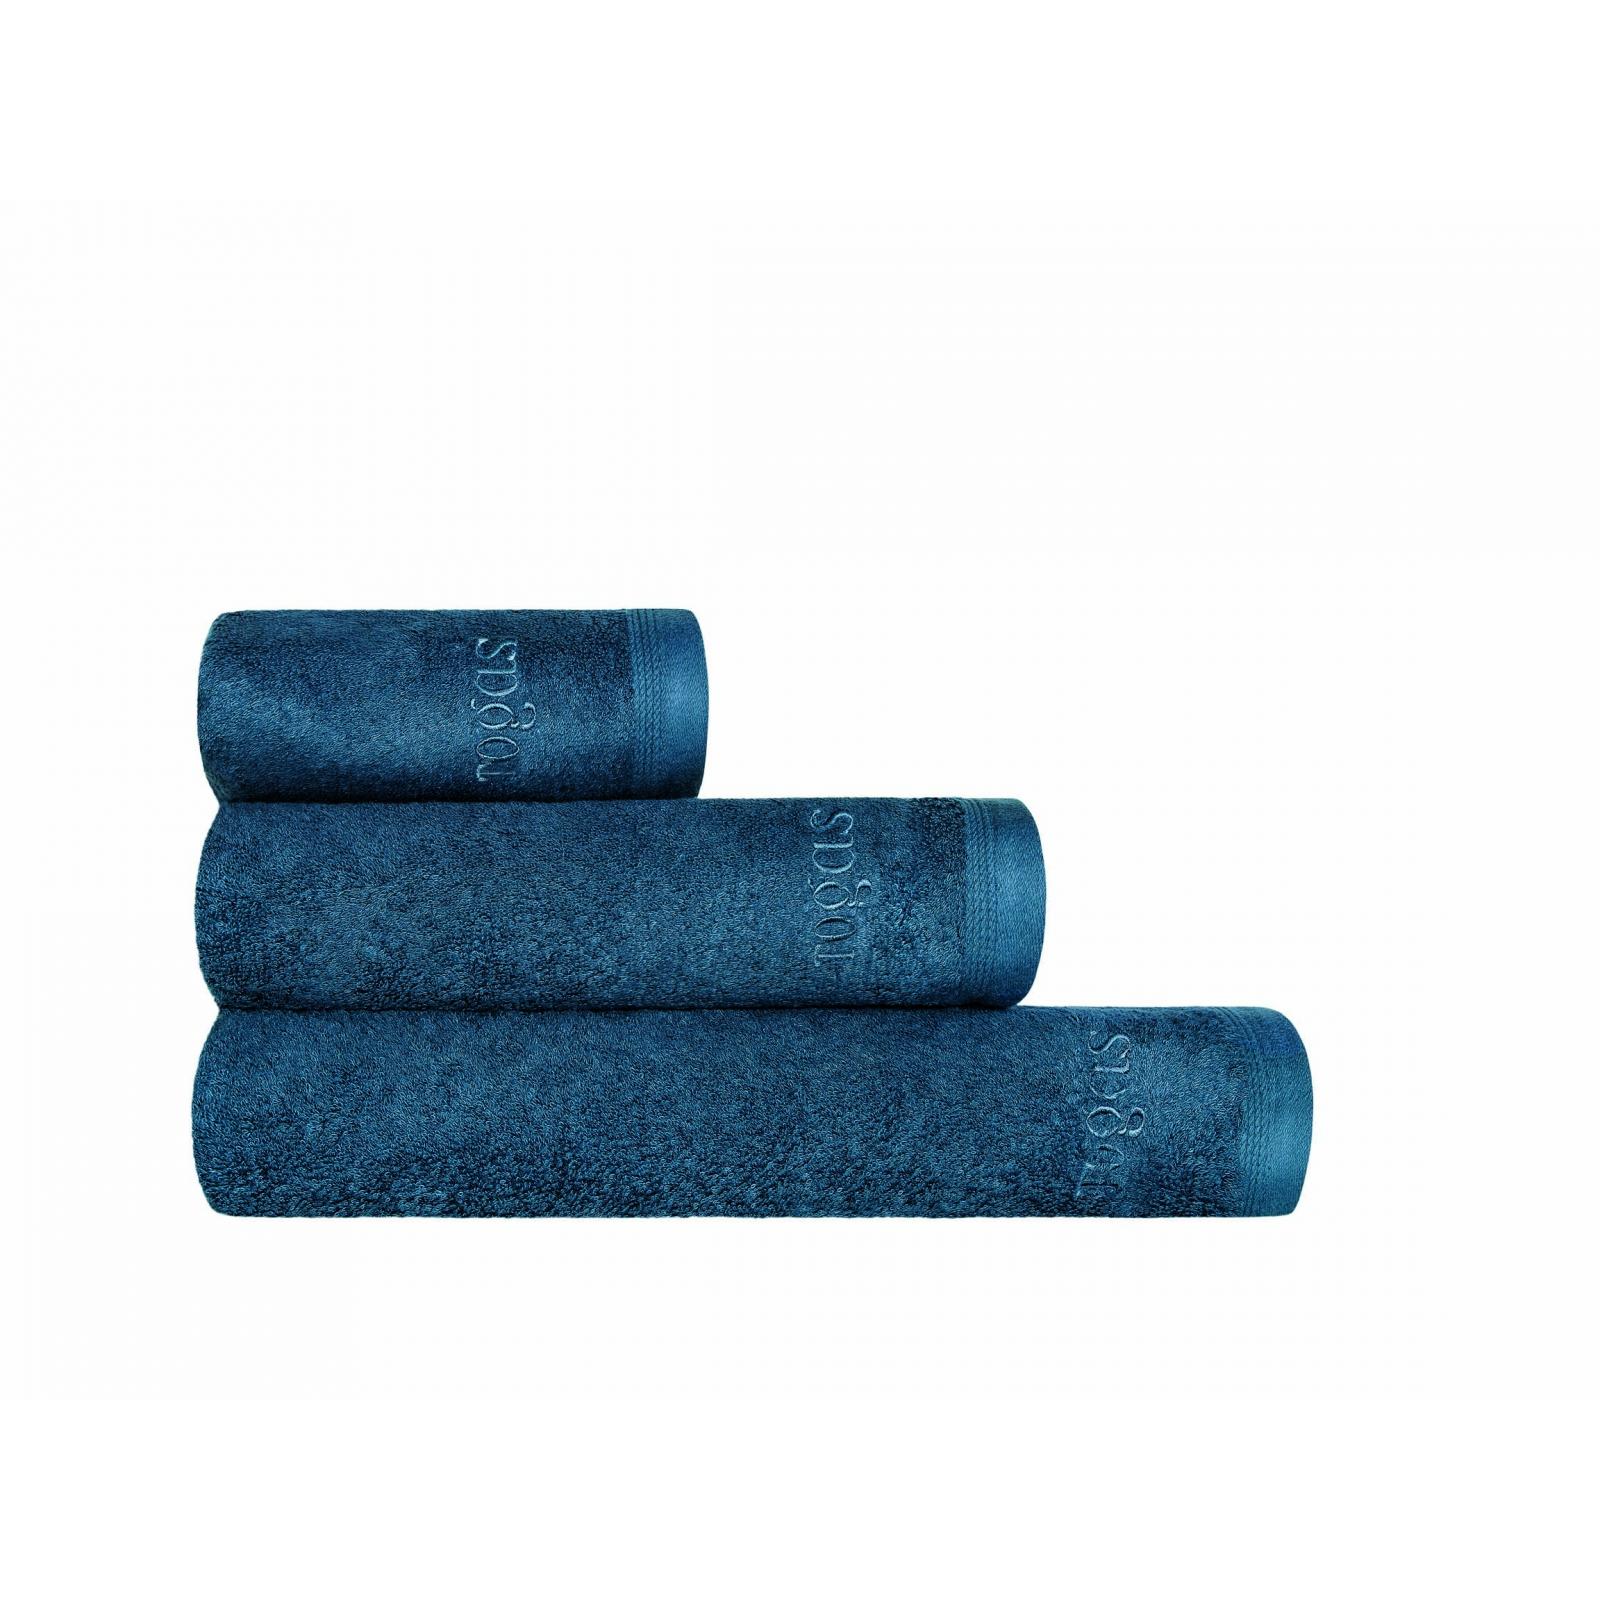 Полотенце Togas Пуатье темно-синее 50х100 см полотенце togas пуатье изумрудный 50х100 см